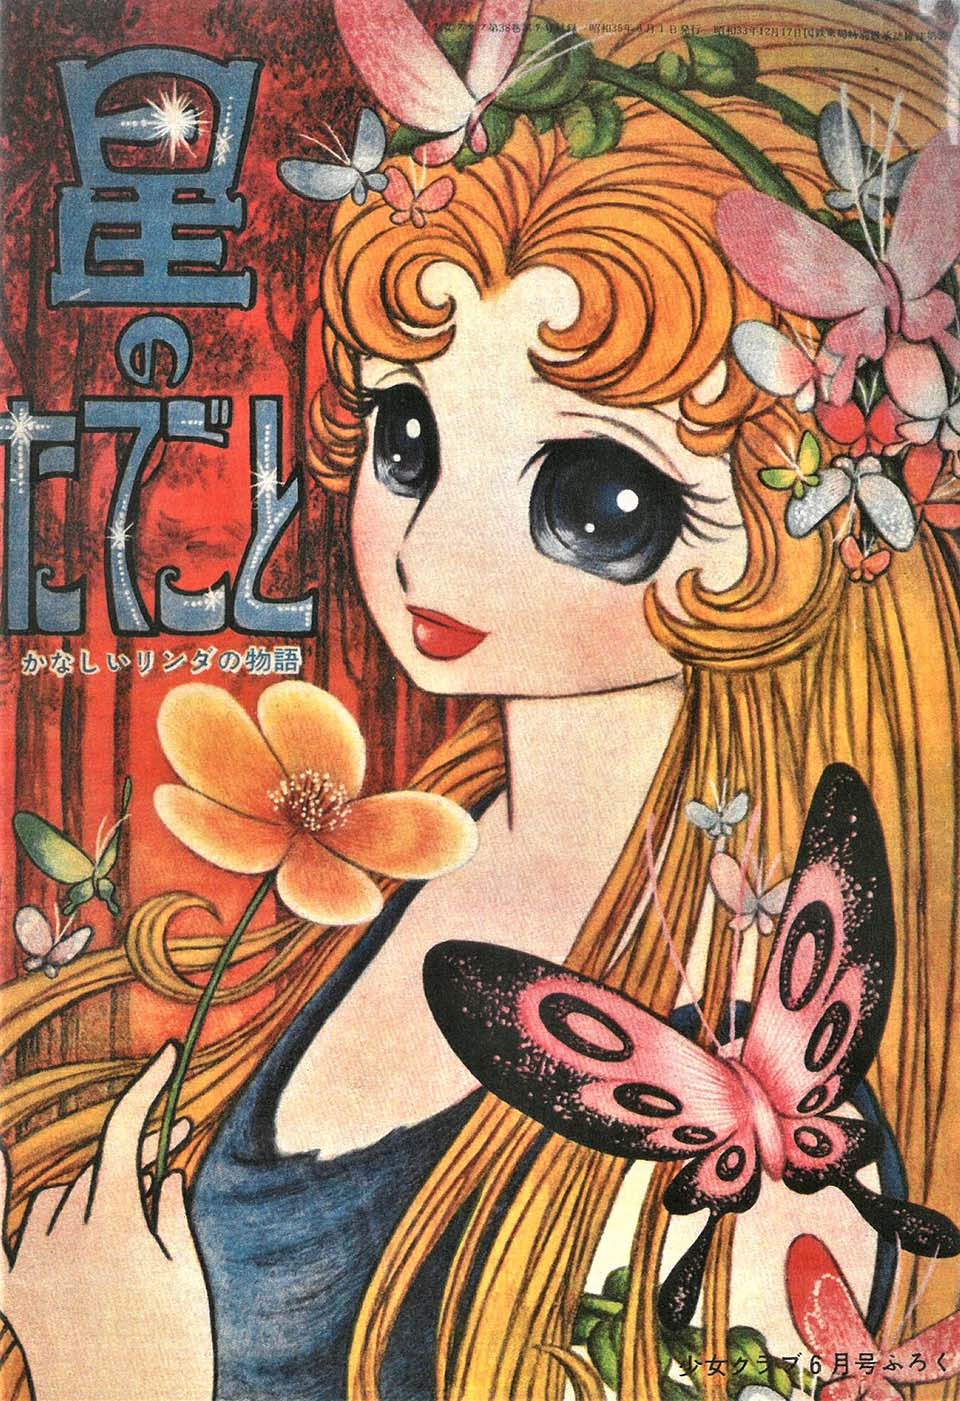 水野英子「星のたてごと」『少女クラブ』1960年6月号ふろく